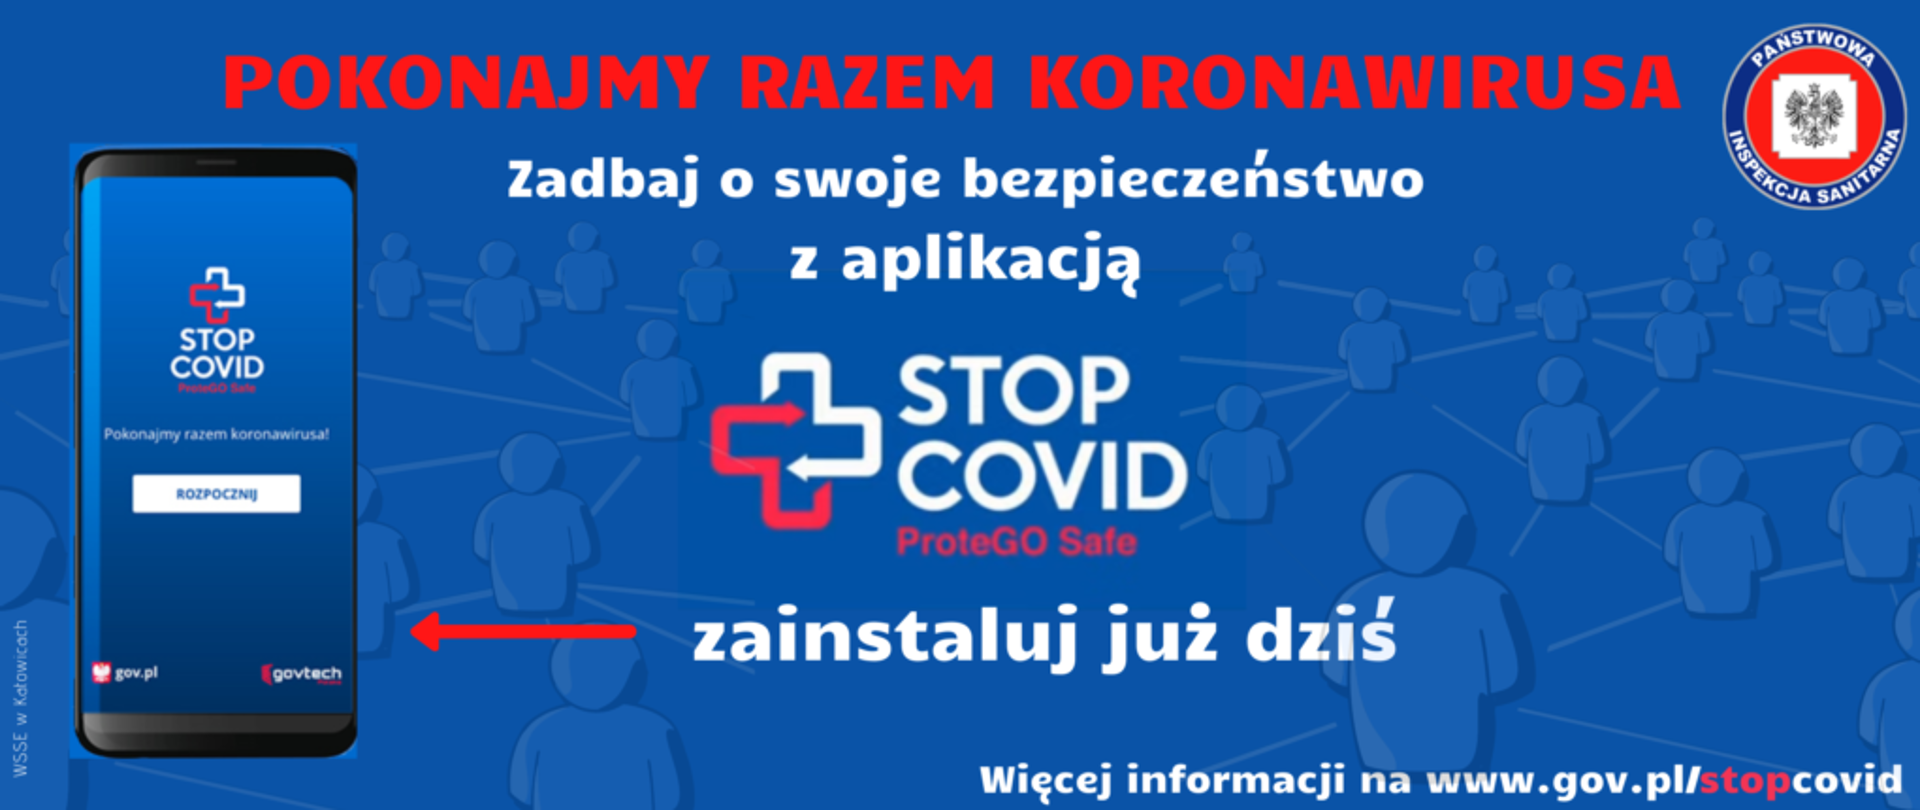 Plakat promujący aplikację Stop Covid ProteGO Safe, na plakacie widoczny telefon z informacją "pokonajmy razem koronawirusa, zadbaj o swoje bezpieczeństwo z aplikacją STOP COVID ProteGO Safe, zainstaluj już dziś"